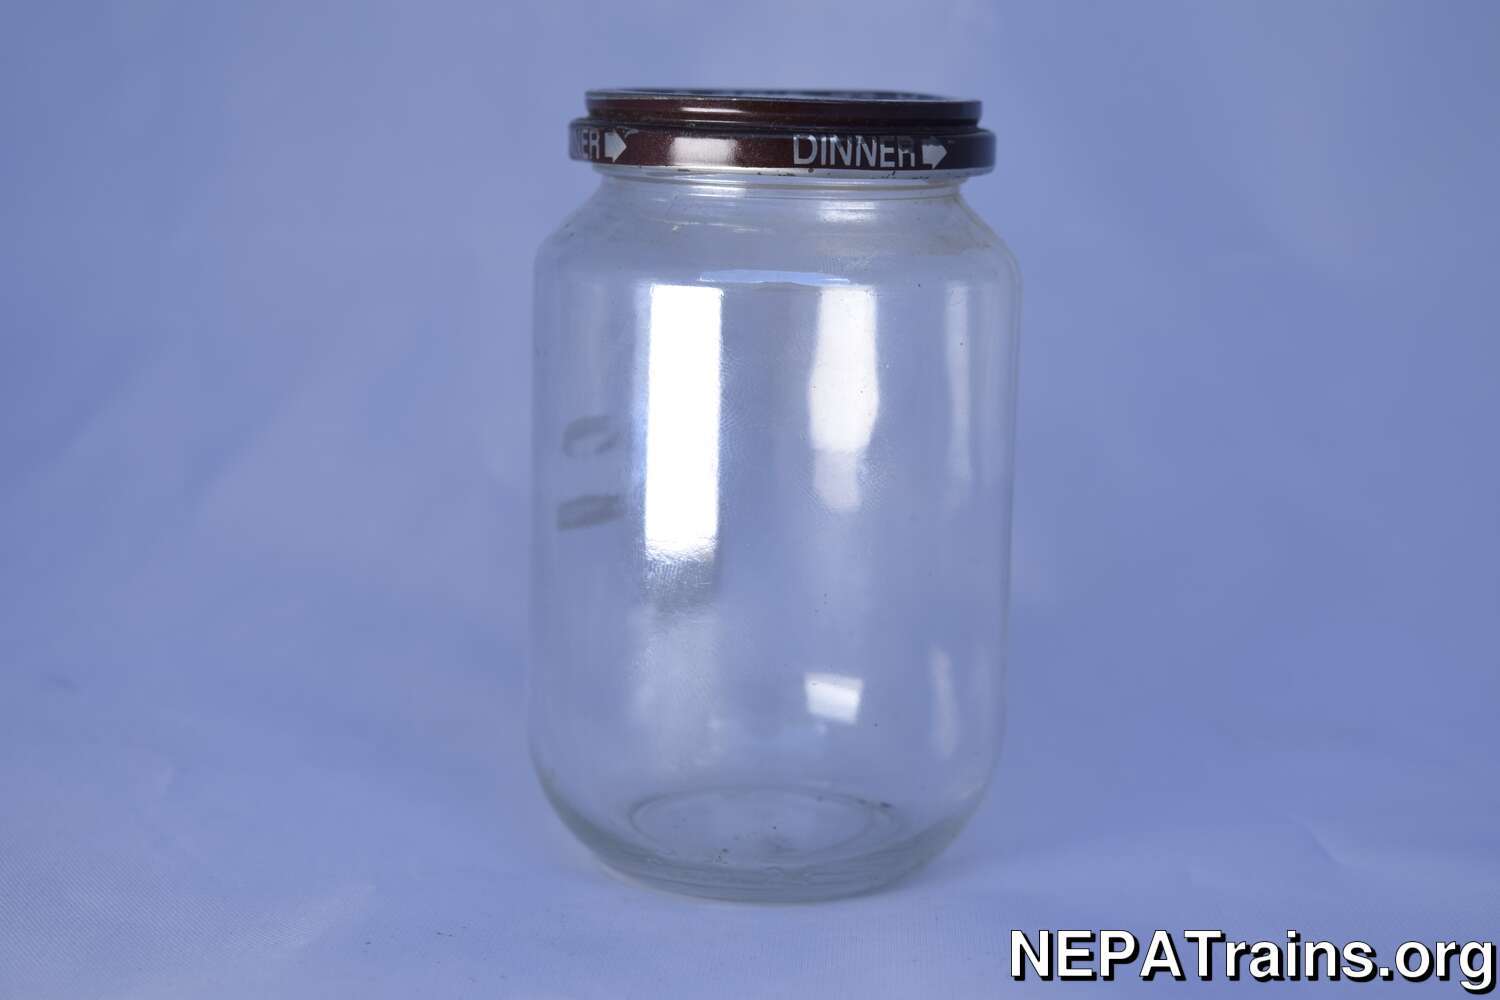 Vintage Beech Nut Dinner Jar